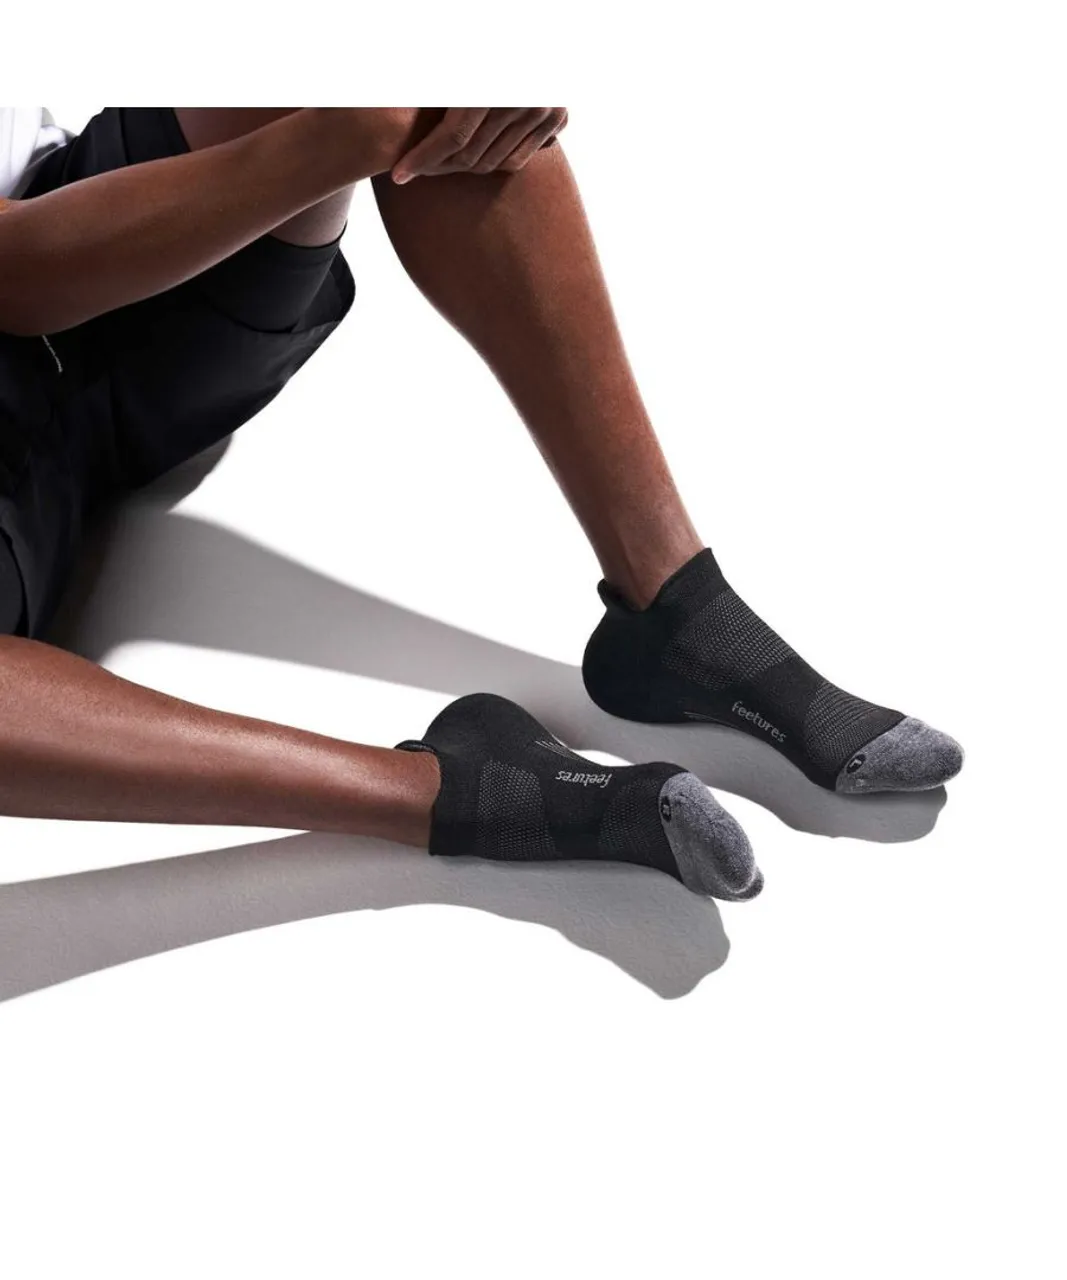 Feetures Unisex Elite Max Cushion No Show Tab Socks Black Spandex